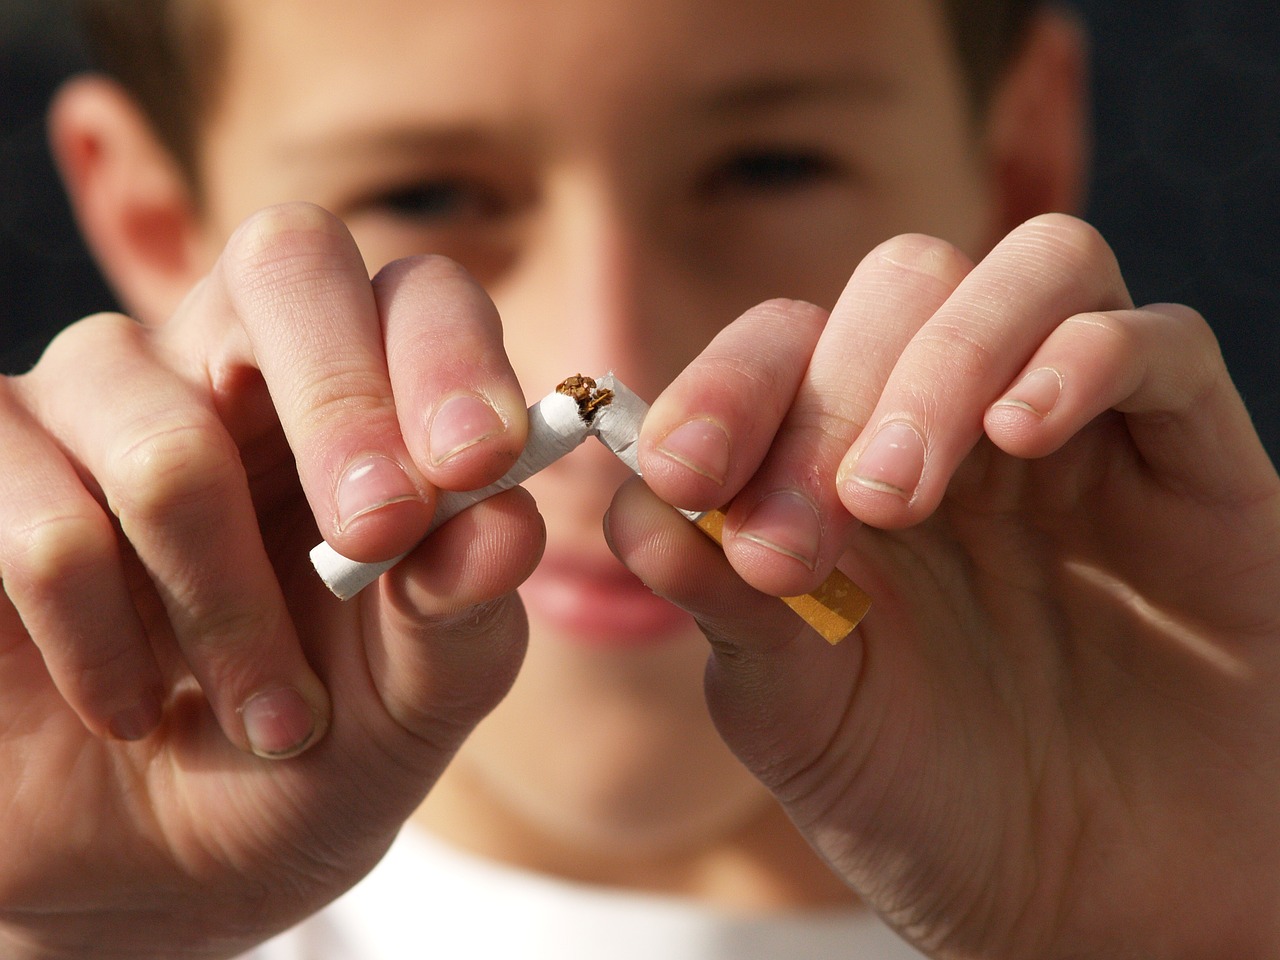 El tabaco aumenta las complicaciones de la diabetes